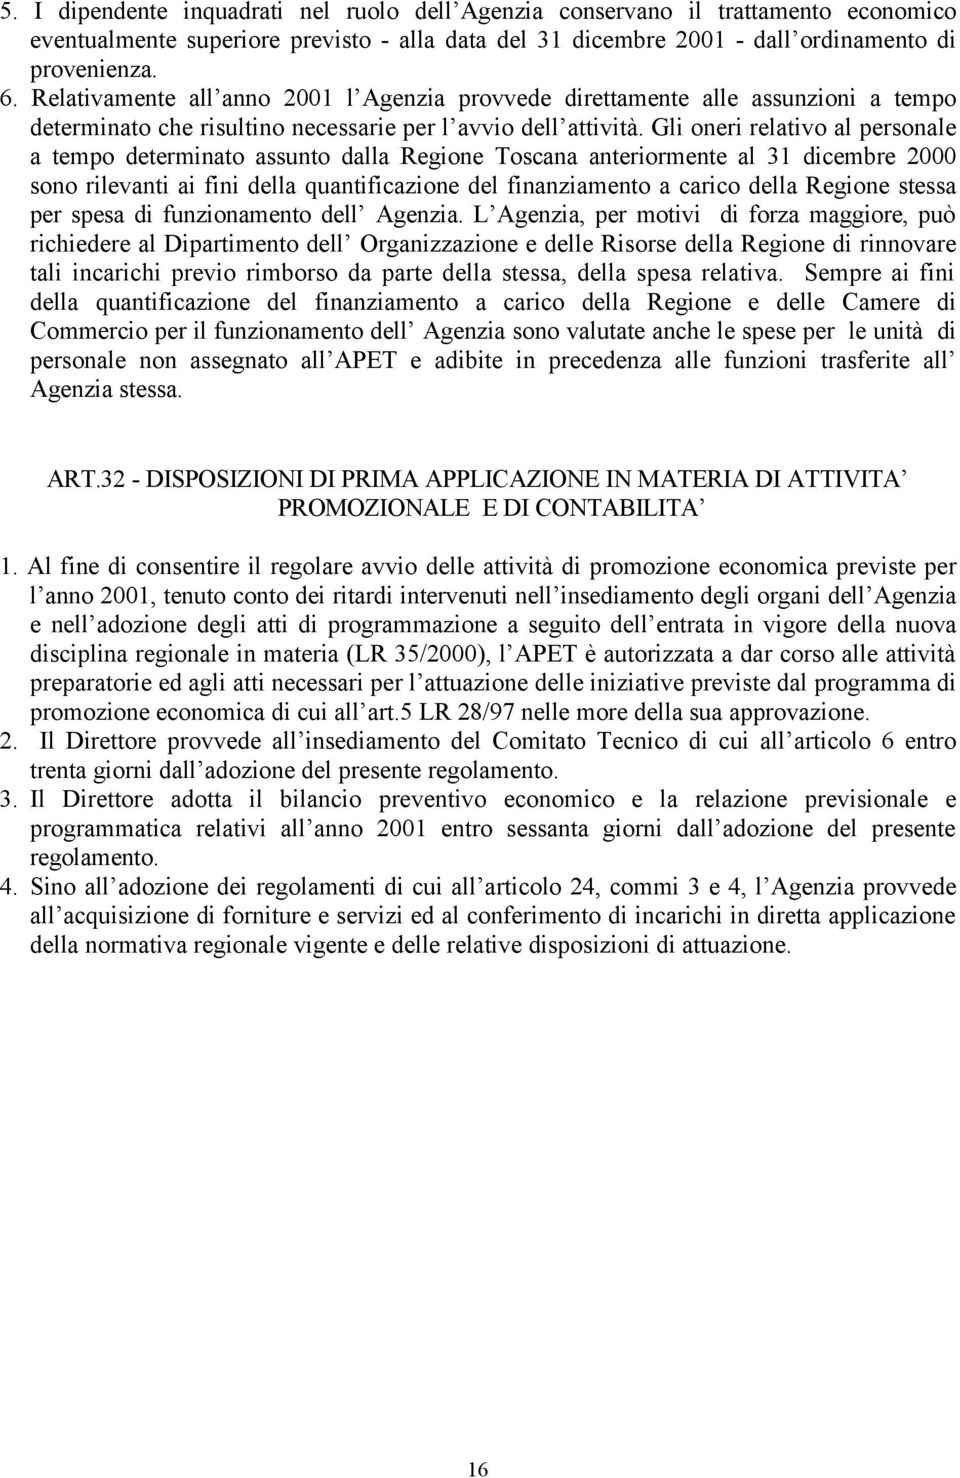 Gli oneri relativo al personale a tempo determinato assunto dalla Regione Toscana anteriormente al 31 dicembre 2000 sono rilevanti ai fini della quantificazione del finanziamento a carico della